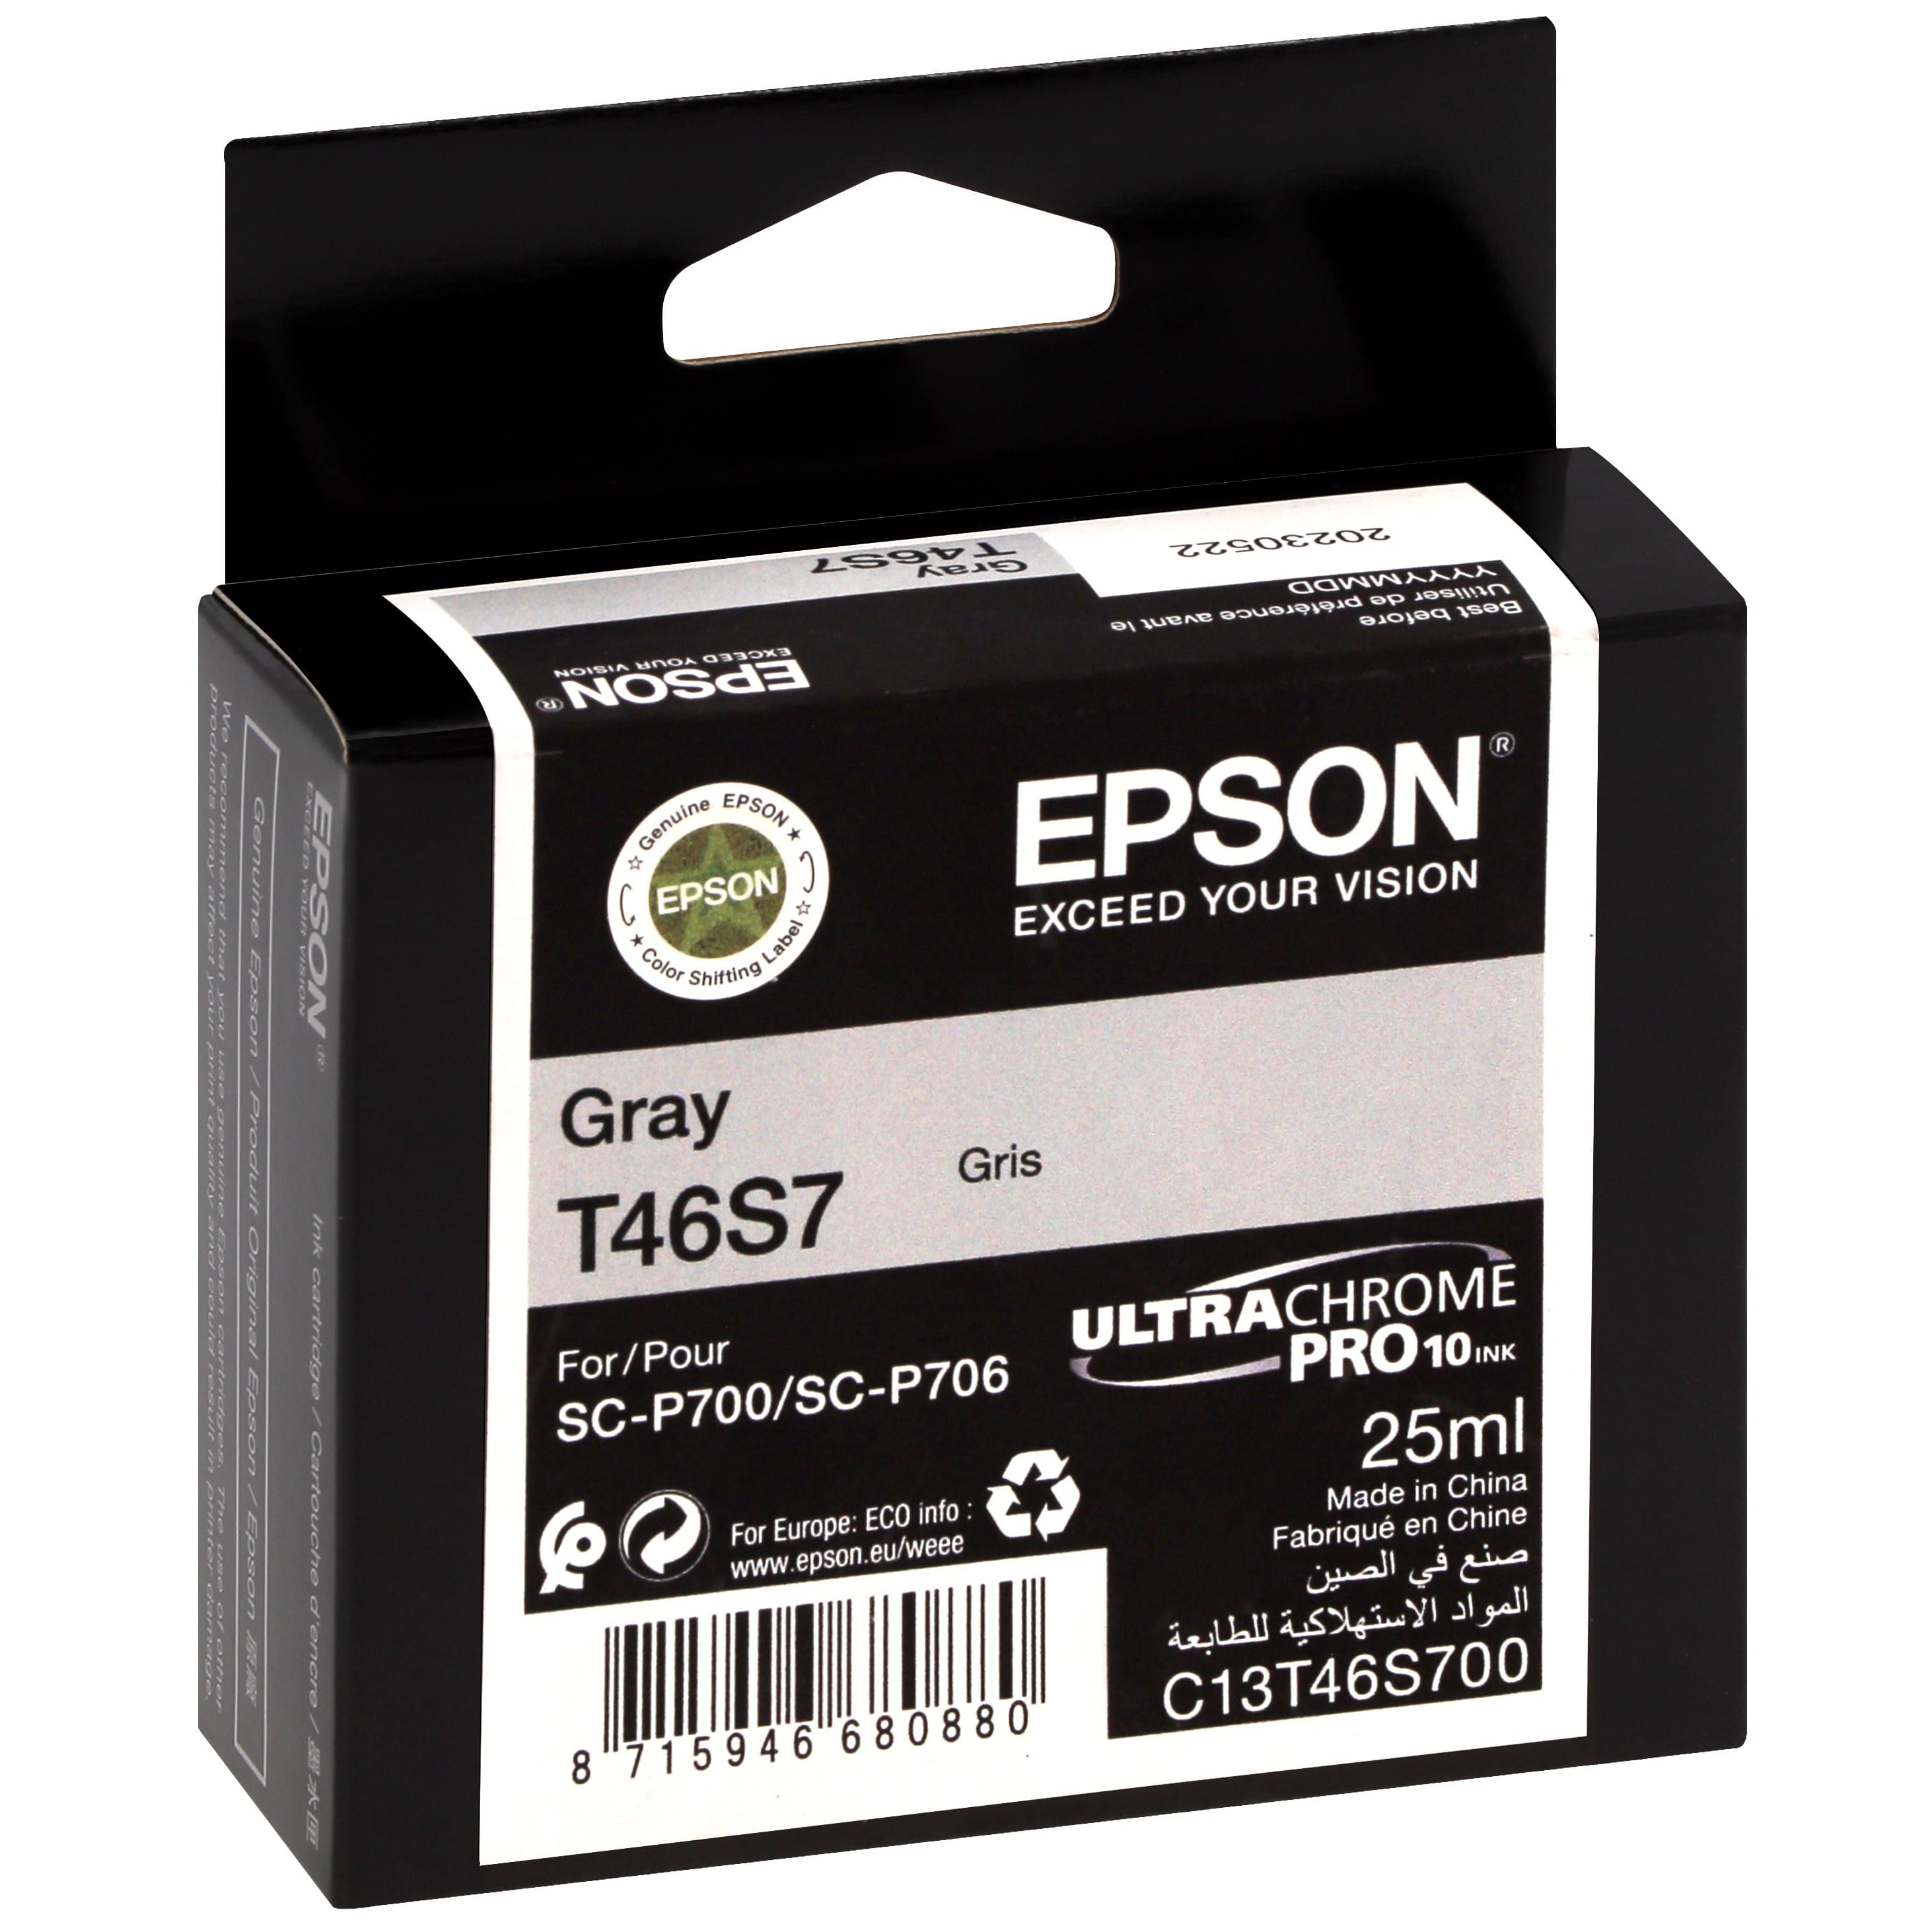 EPSON - Cartouche d'encre traceur UltraChrome Pro 10 SC-P700 - Gris - 25ml - T46S7